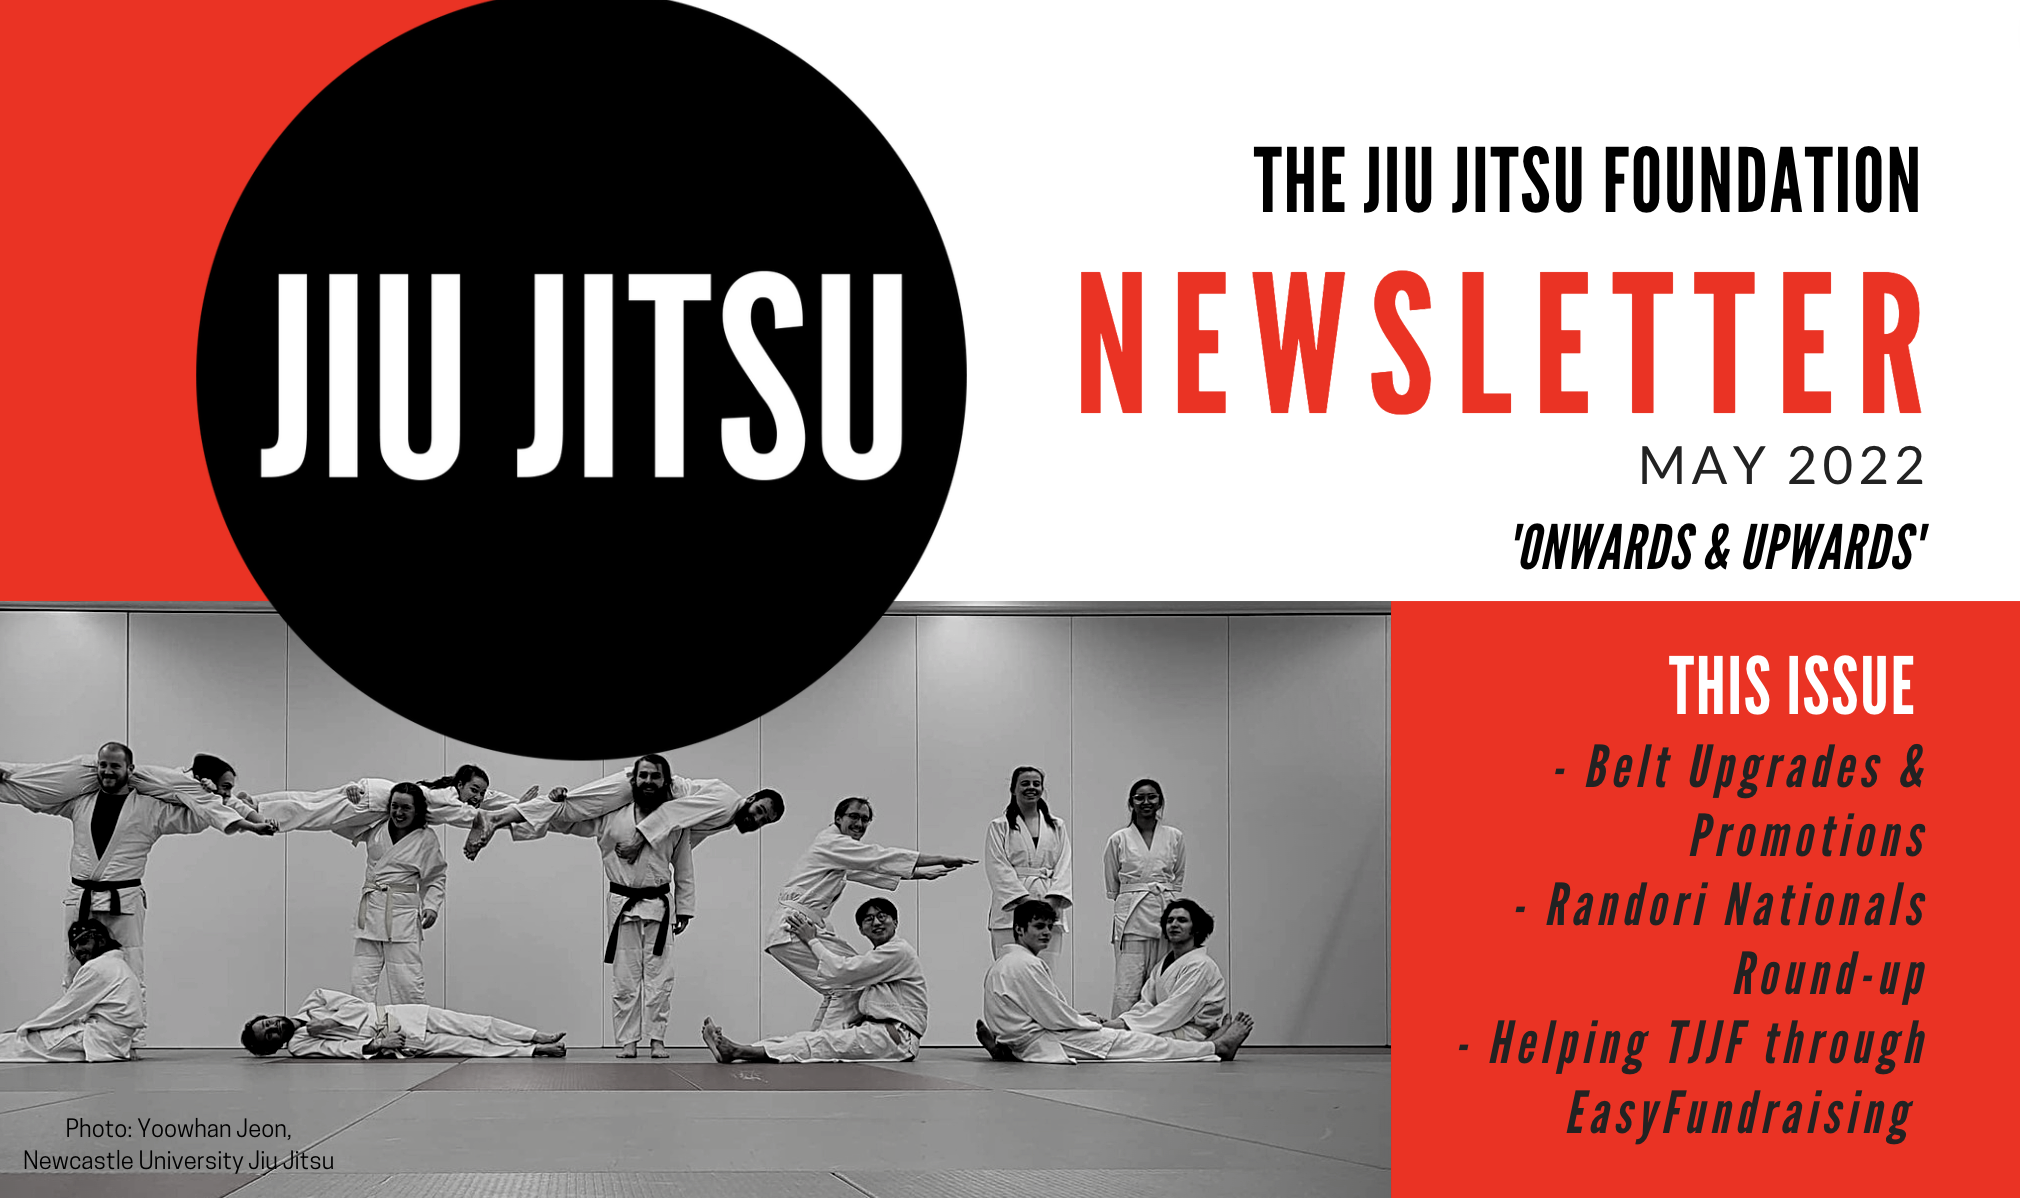 The Jiu Jitsu Foundation